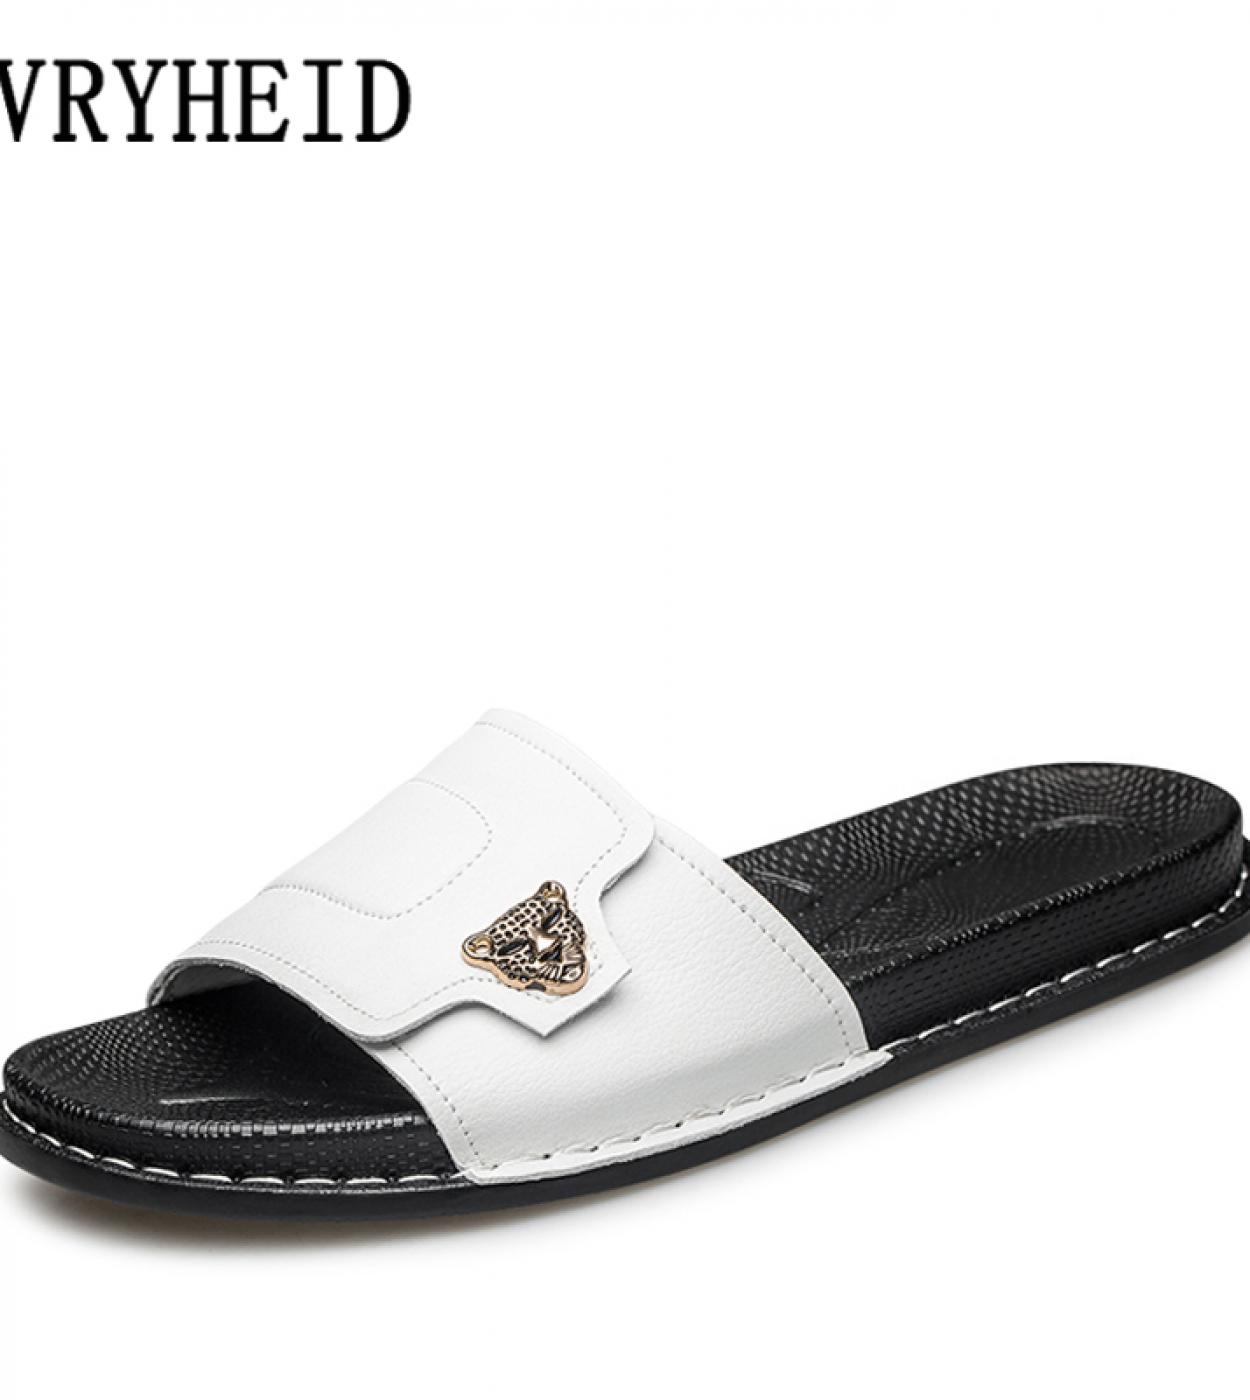 Zapatillas Vryheid de alta calidad para hombre, calzado suave de verano de cuero genuino, sandalias planas de moda para hombre a